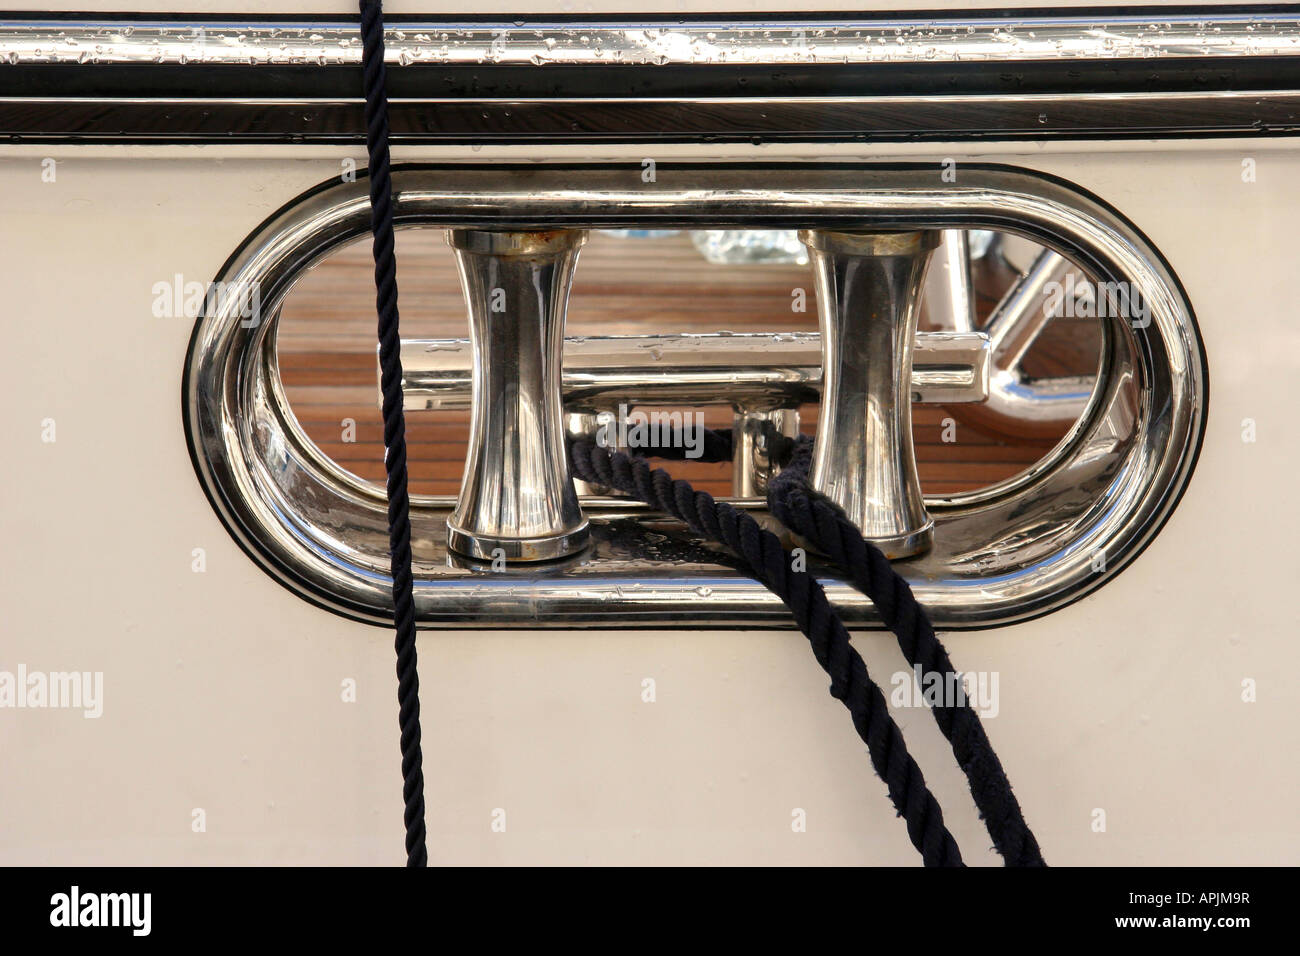 Guide-câble en acier inoxydable avec roulettes à l'hôtel Collins Stewart London Exposition de bateaux Excel Londres Banque D'Images